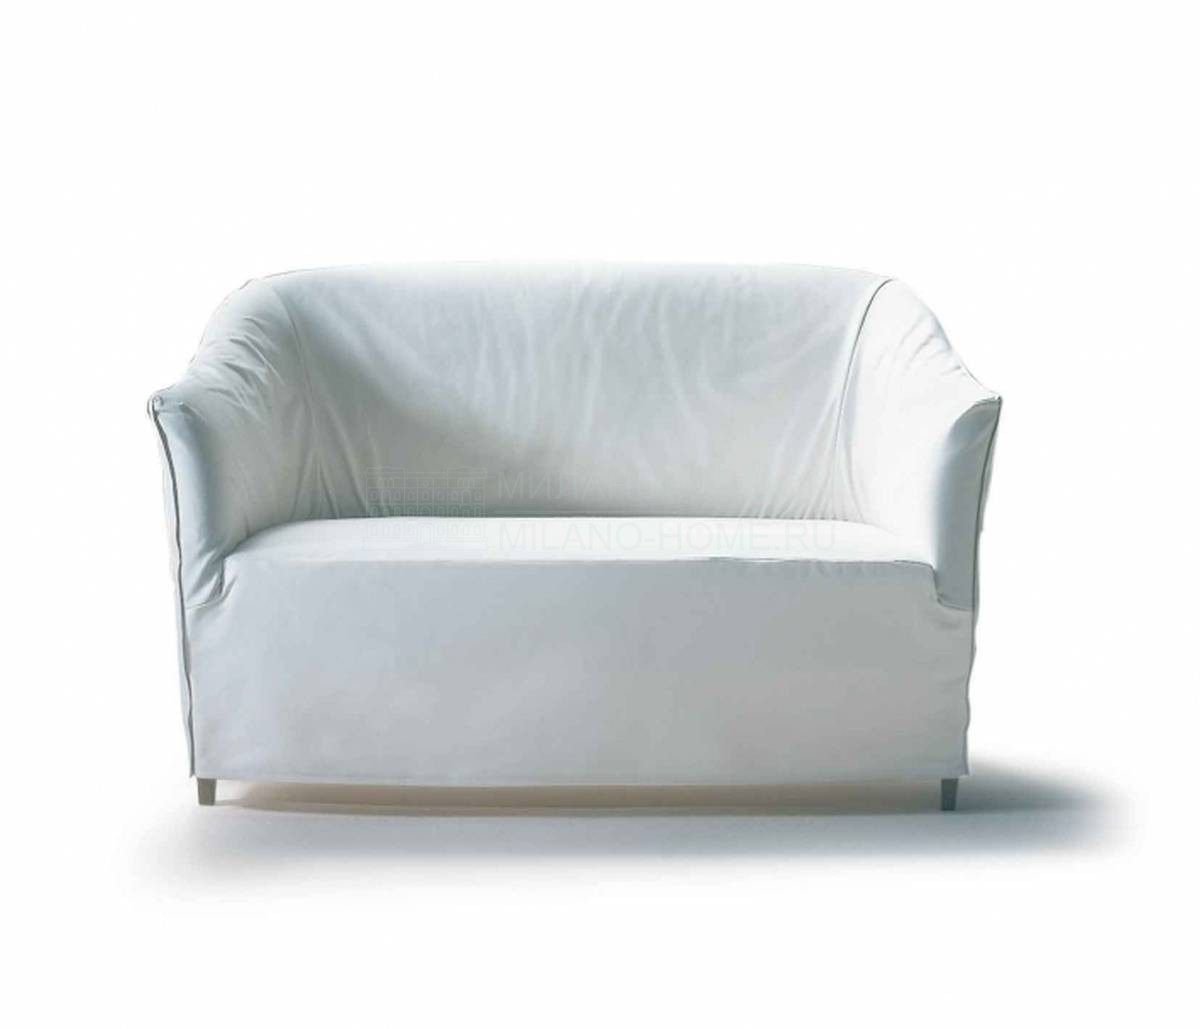 Прямой диван Doralice sofa из Италии фабрики FLEXFORM